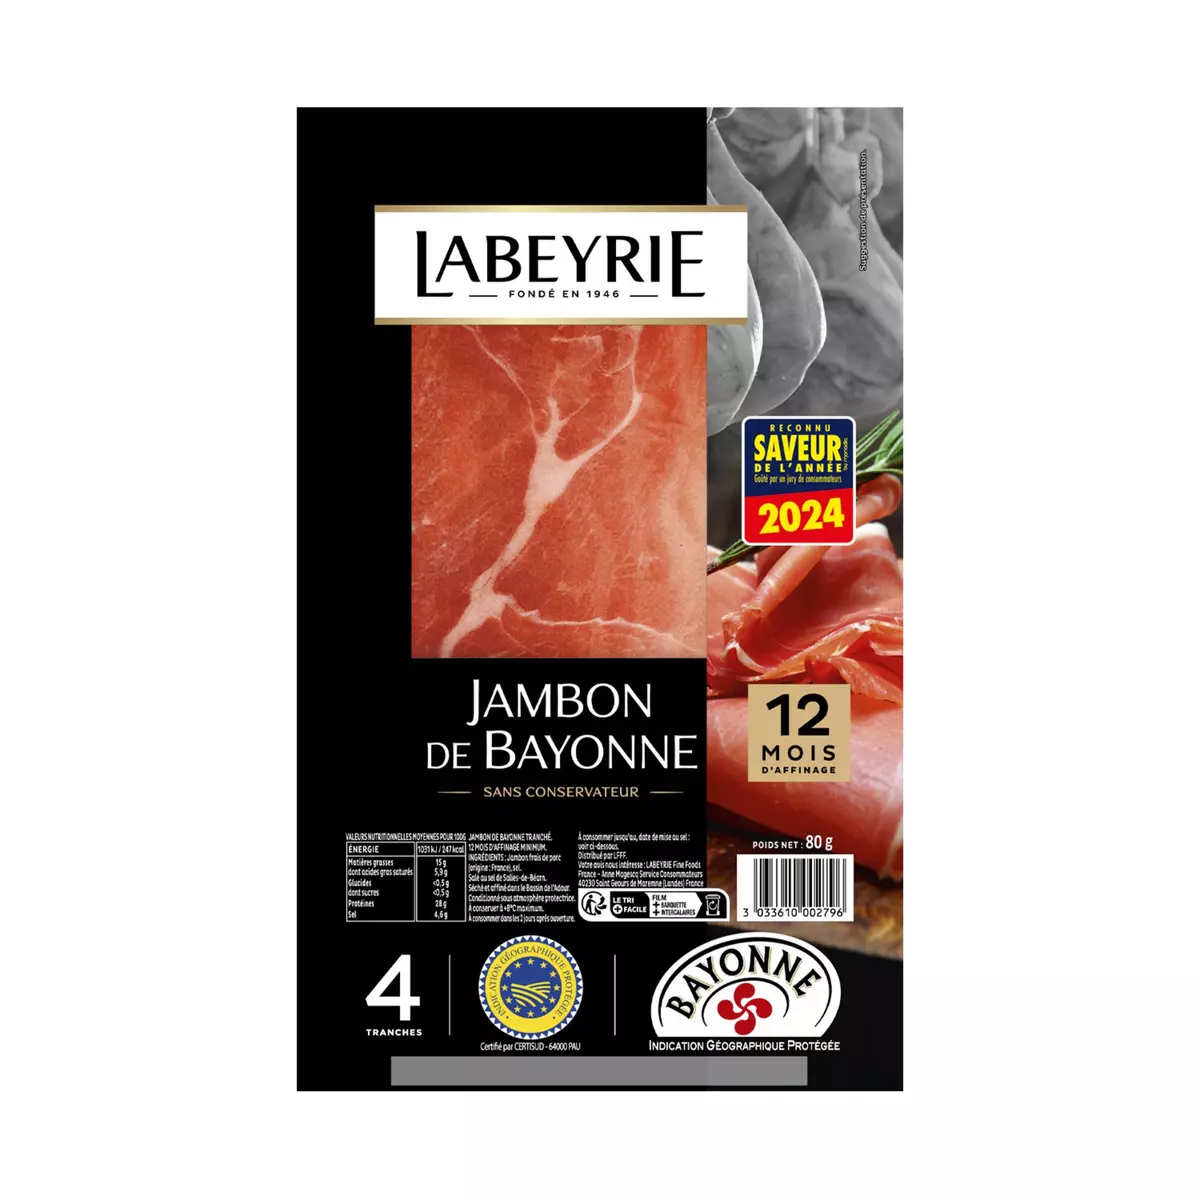 LABEYRIE Jambon de Bayonne IGP 12 mois d'affinage 4 tranches 80g